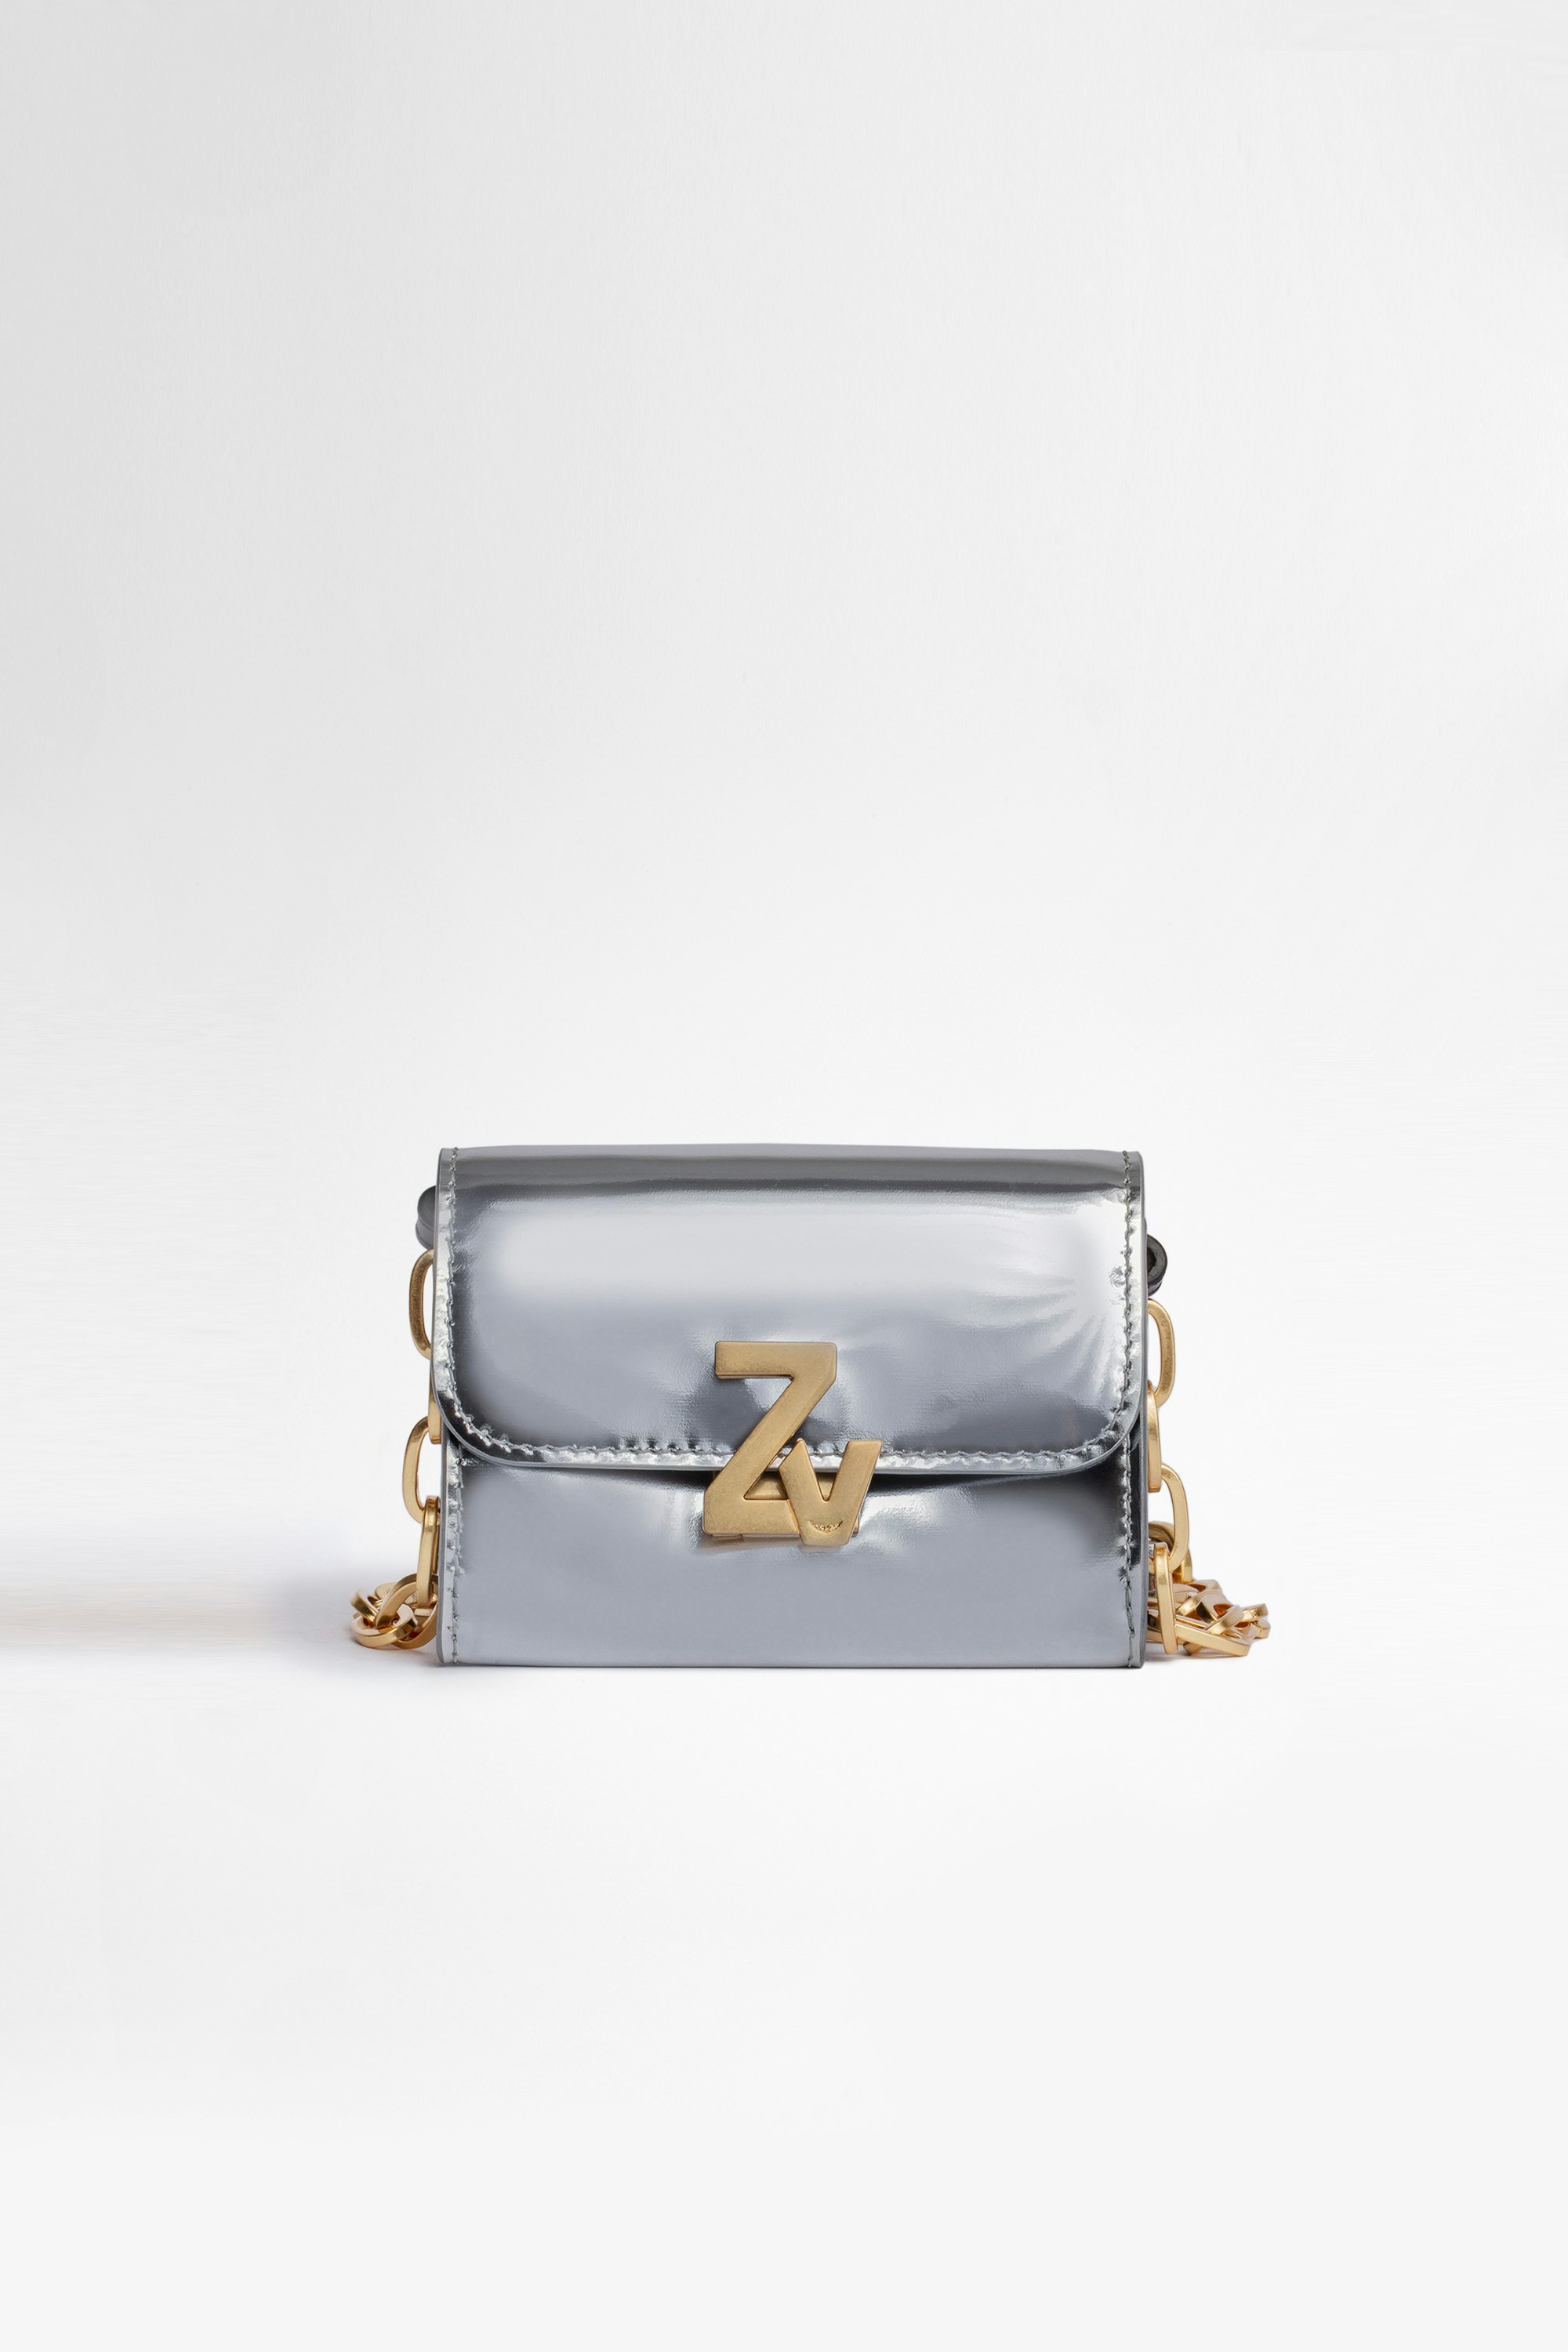 Damentasche Wallet ZV Initiale Le Tiny Unchained Damen-Portemonnaie aus silberfarbenem Spiegeleffekt-Leder